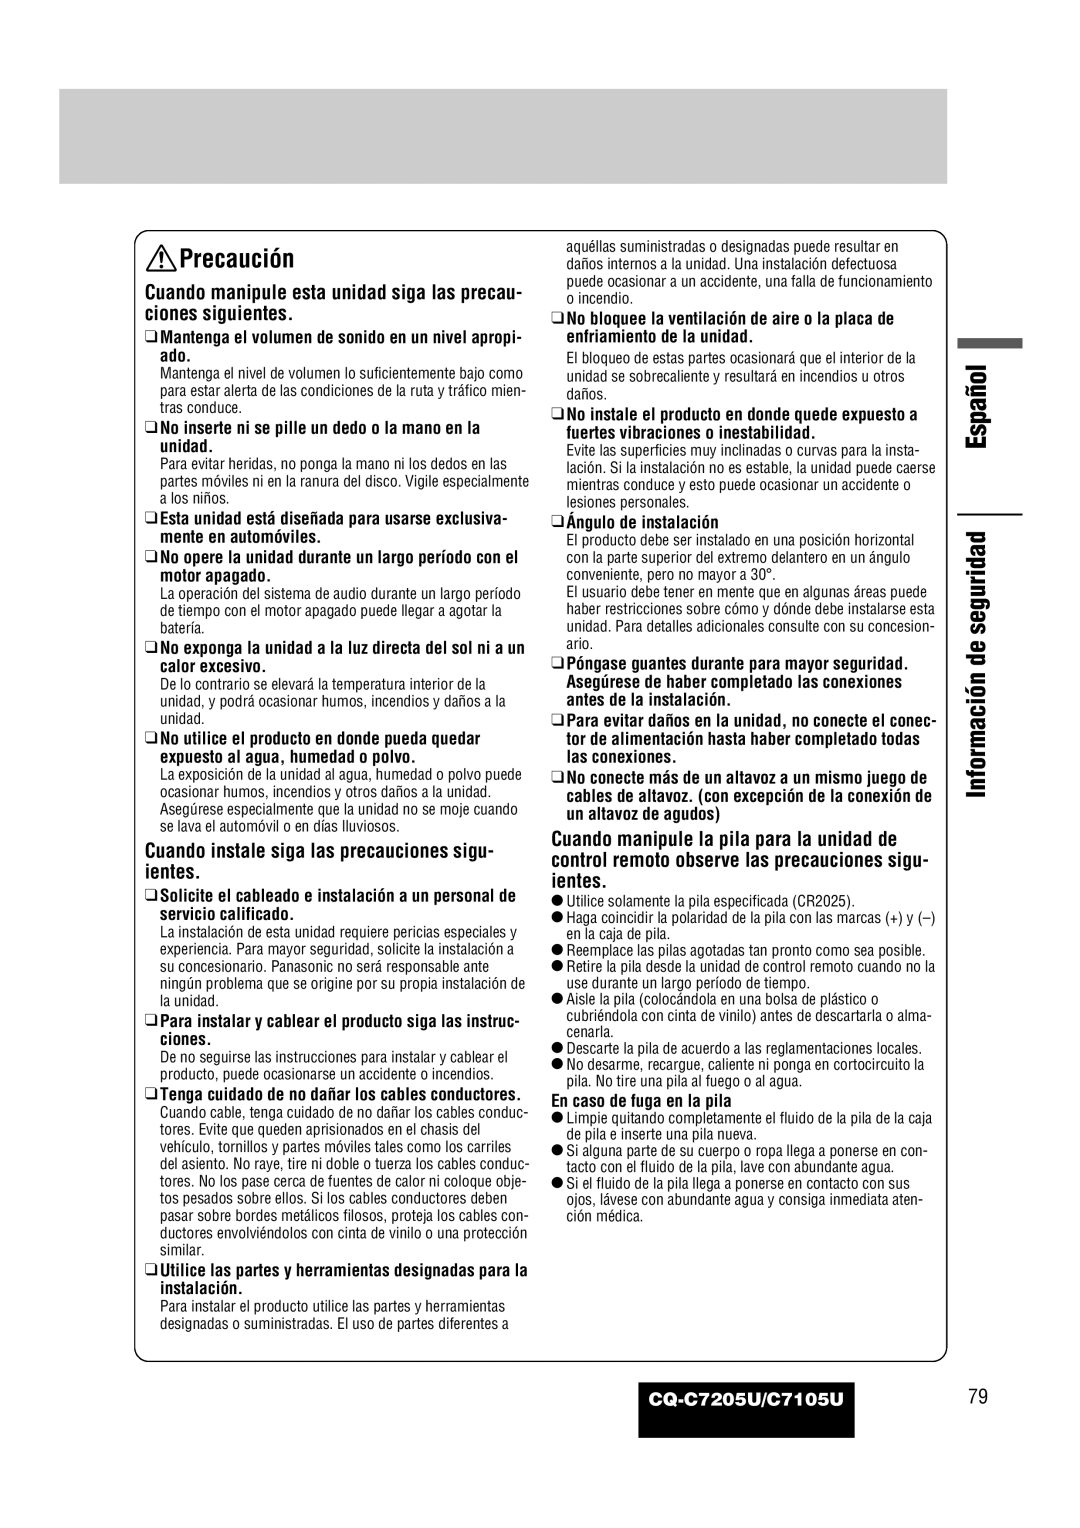 Panasonic CQ-C7205U warranty Español, Precaución, Información de seguridad 